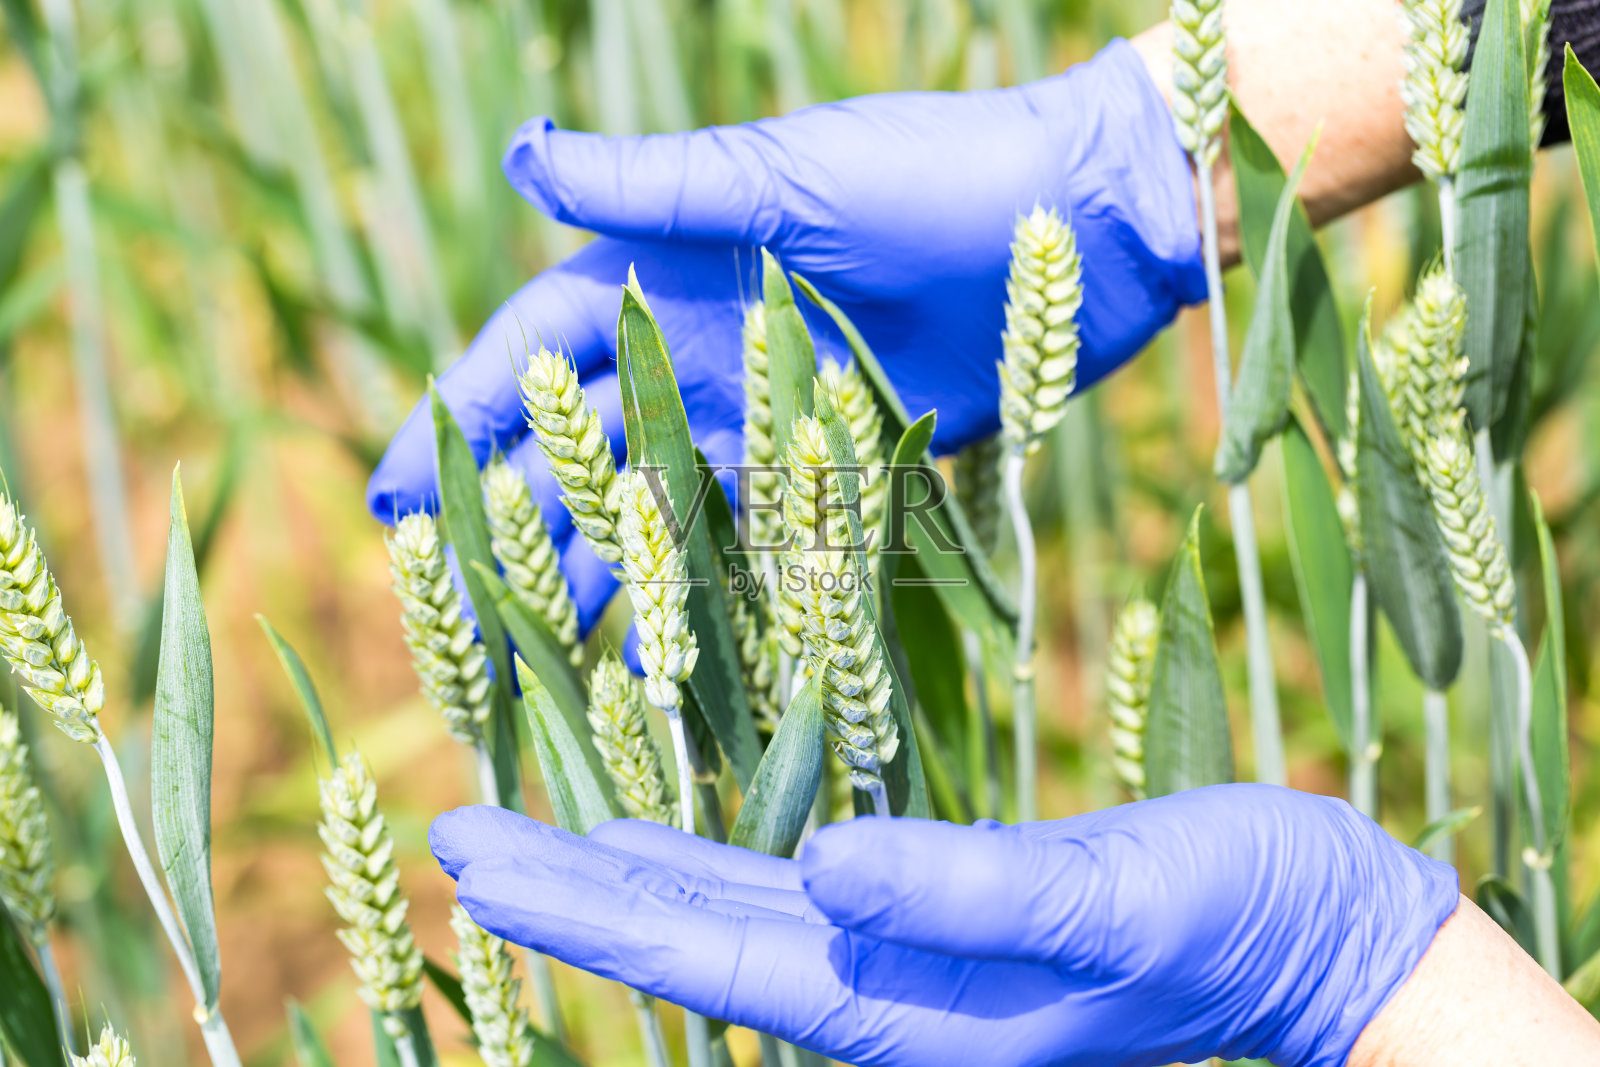 研究人员手戴蓝色手套检查小麦在阳光下的生长情况照片摄影图片